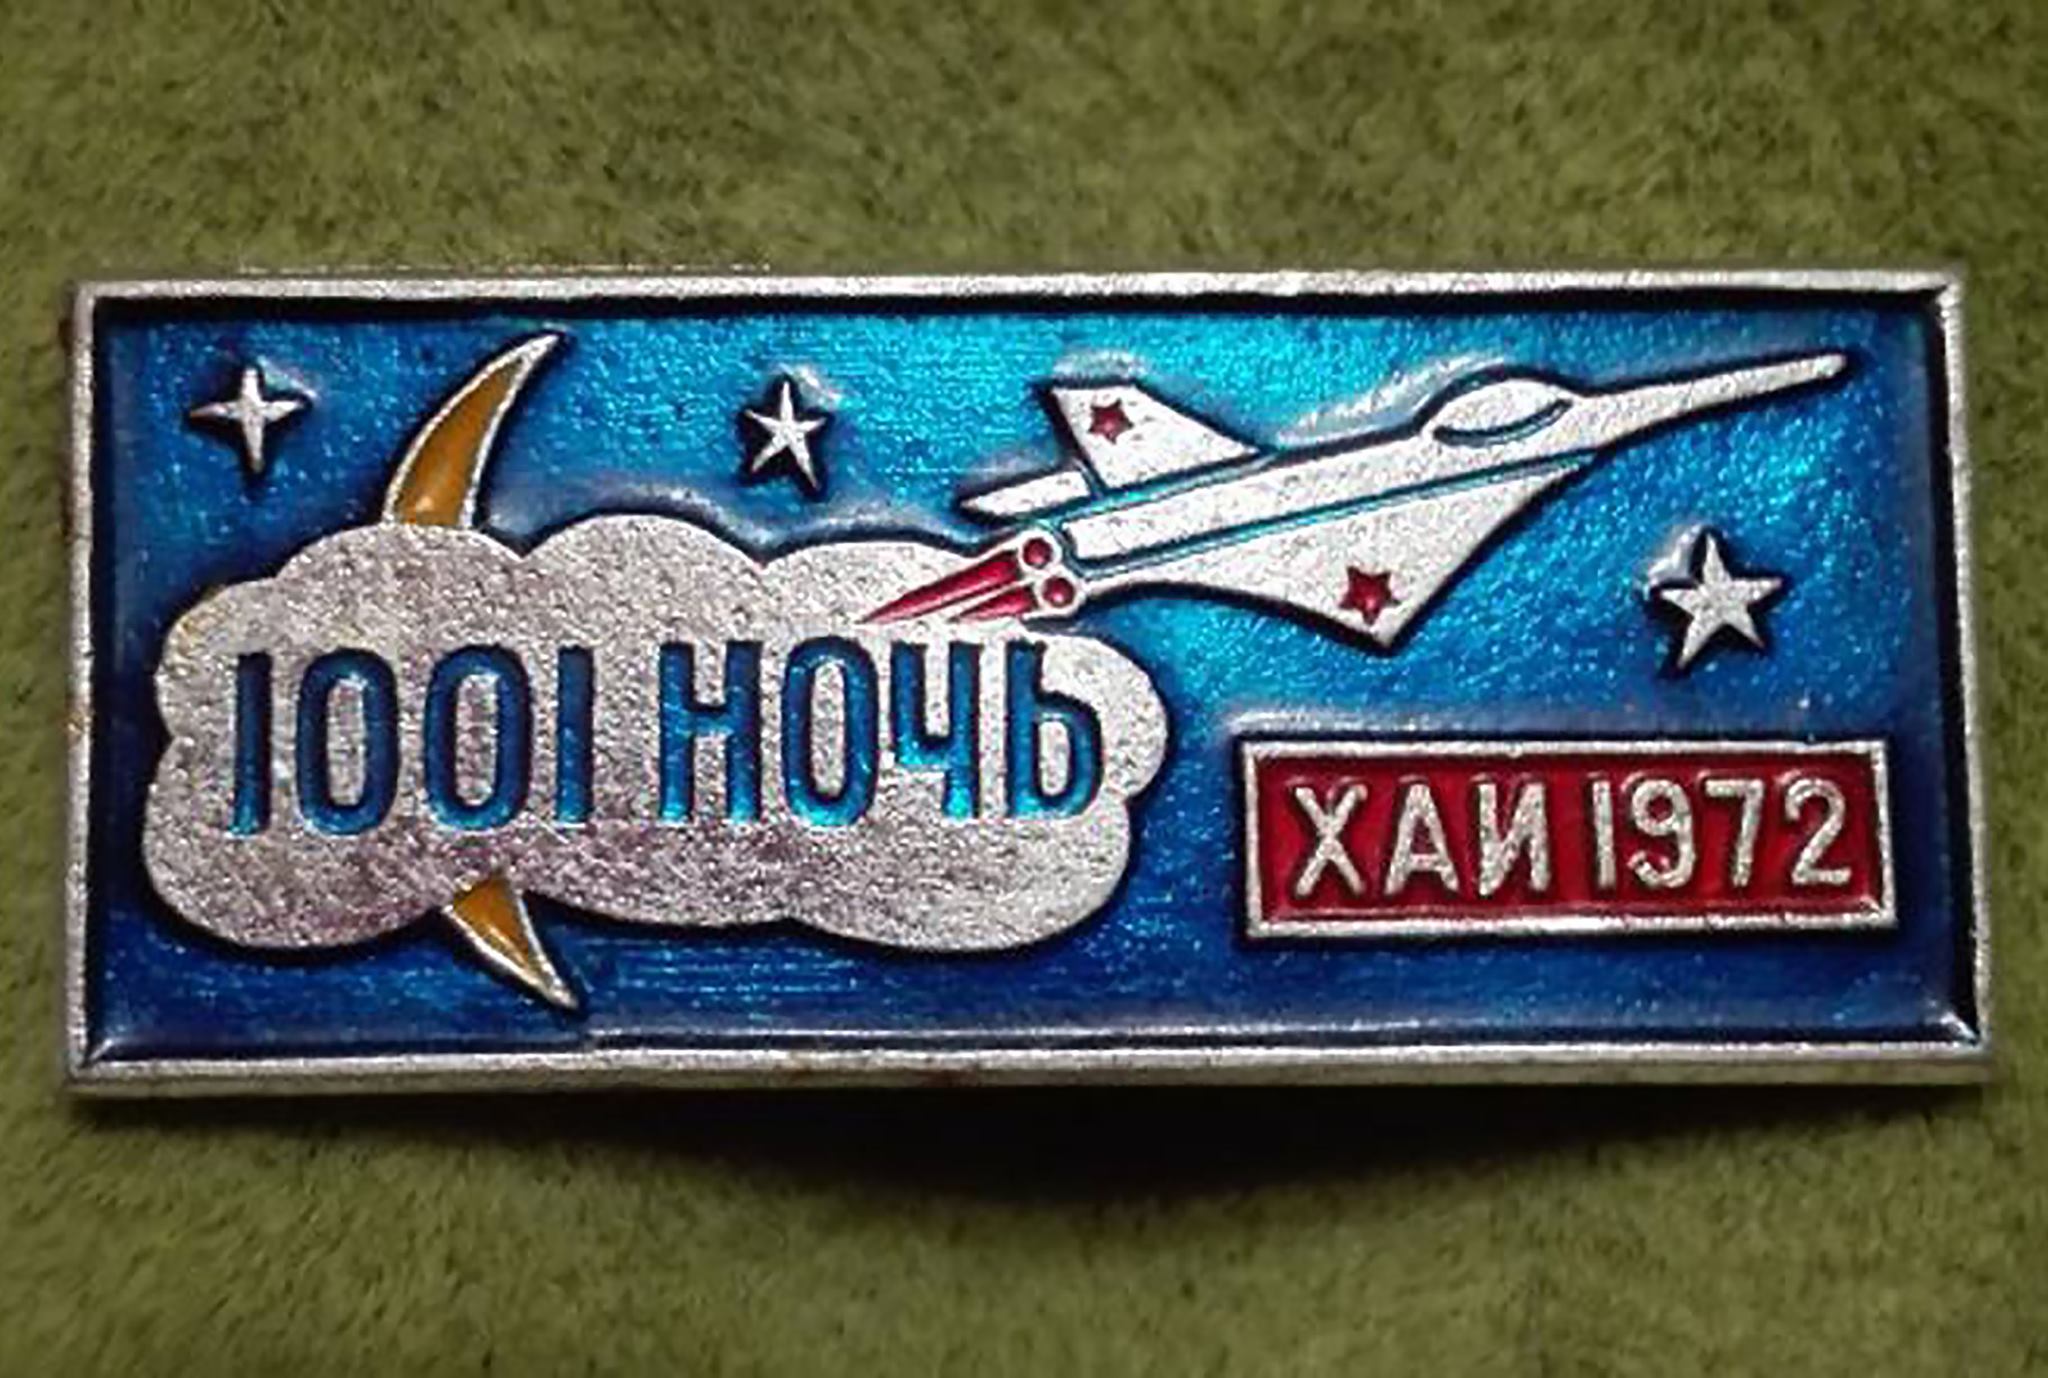 День космонавтики, 12 апреля, Юрий Гагарин, Ю.А. Гагарин, полет в космос, ХАИ, фото